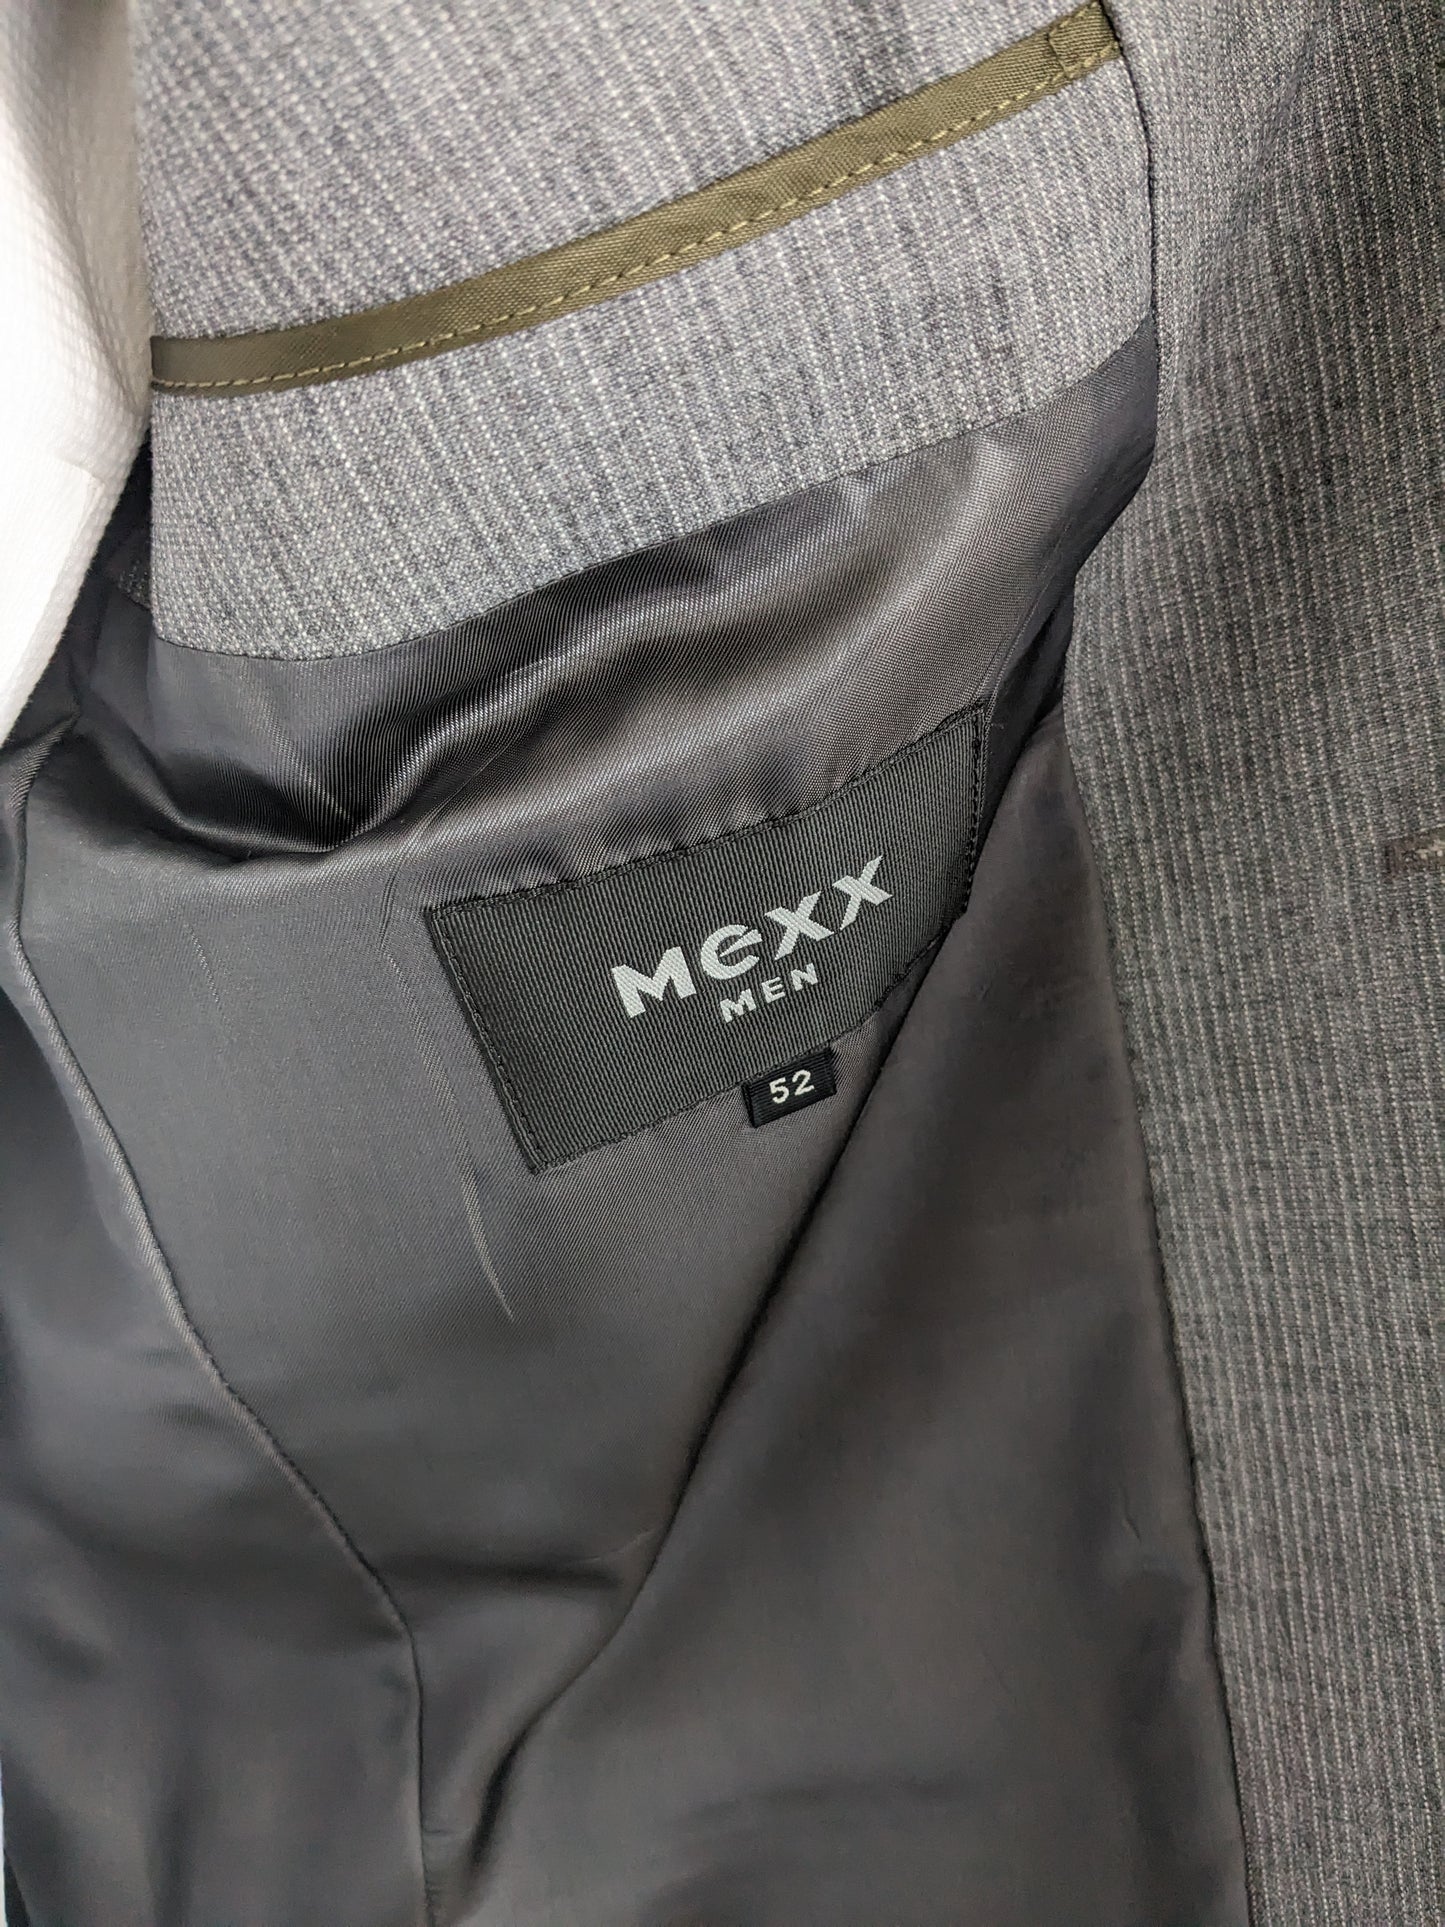 Mexx jacket. Gray white striped. Size 52 / L.